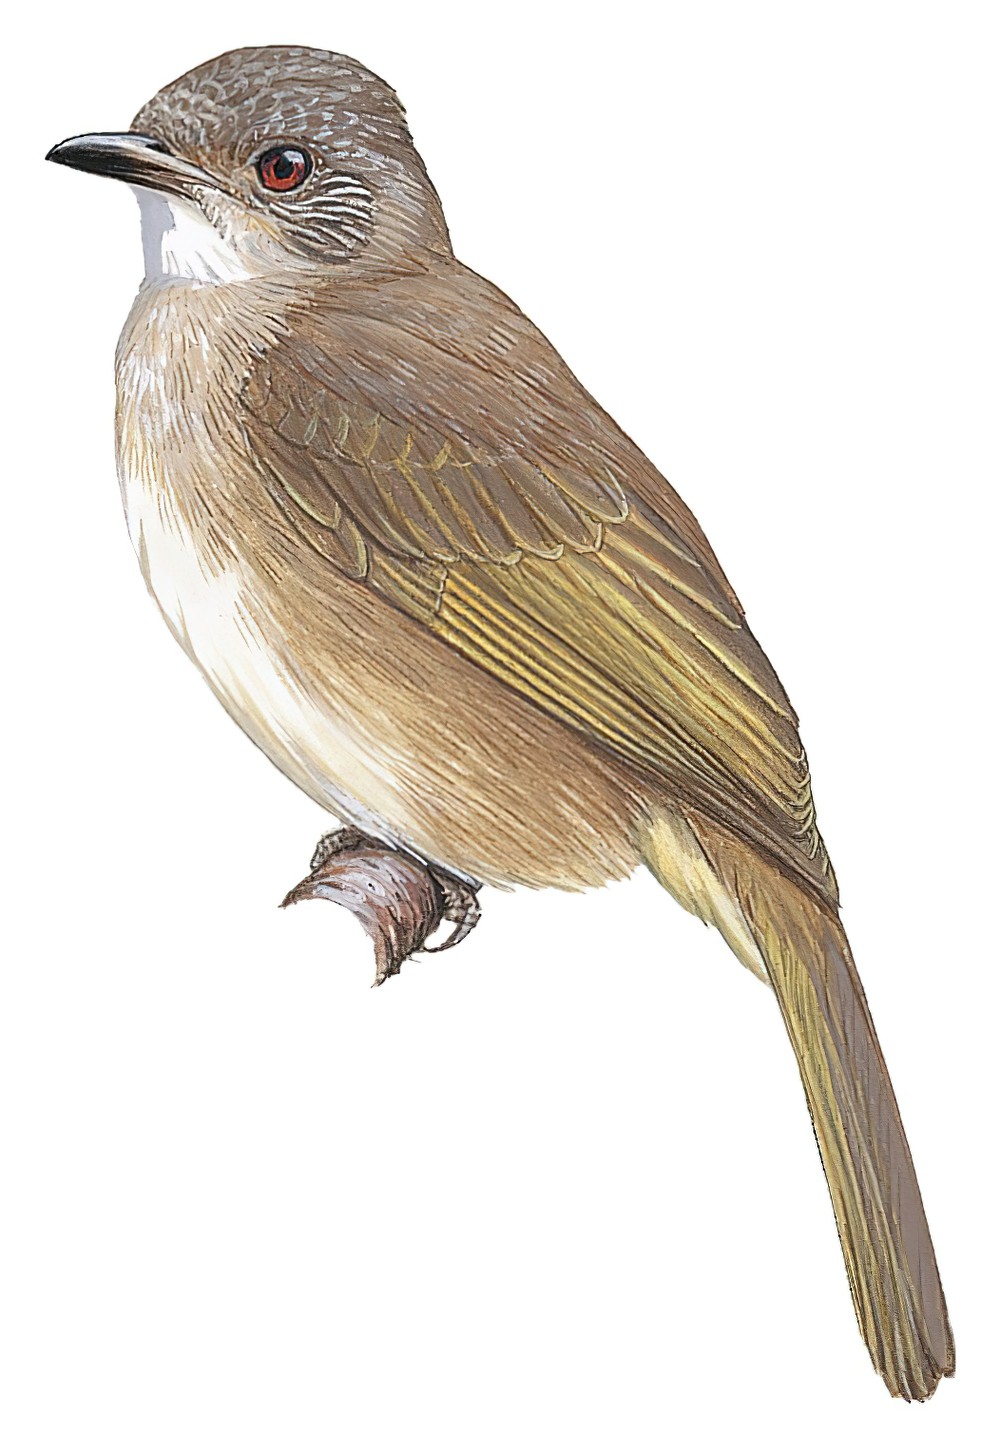 Ashy-fronted Bulbul / Pycnonotus cinereifrons